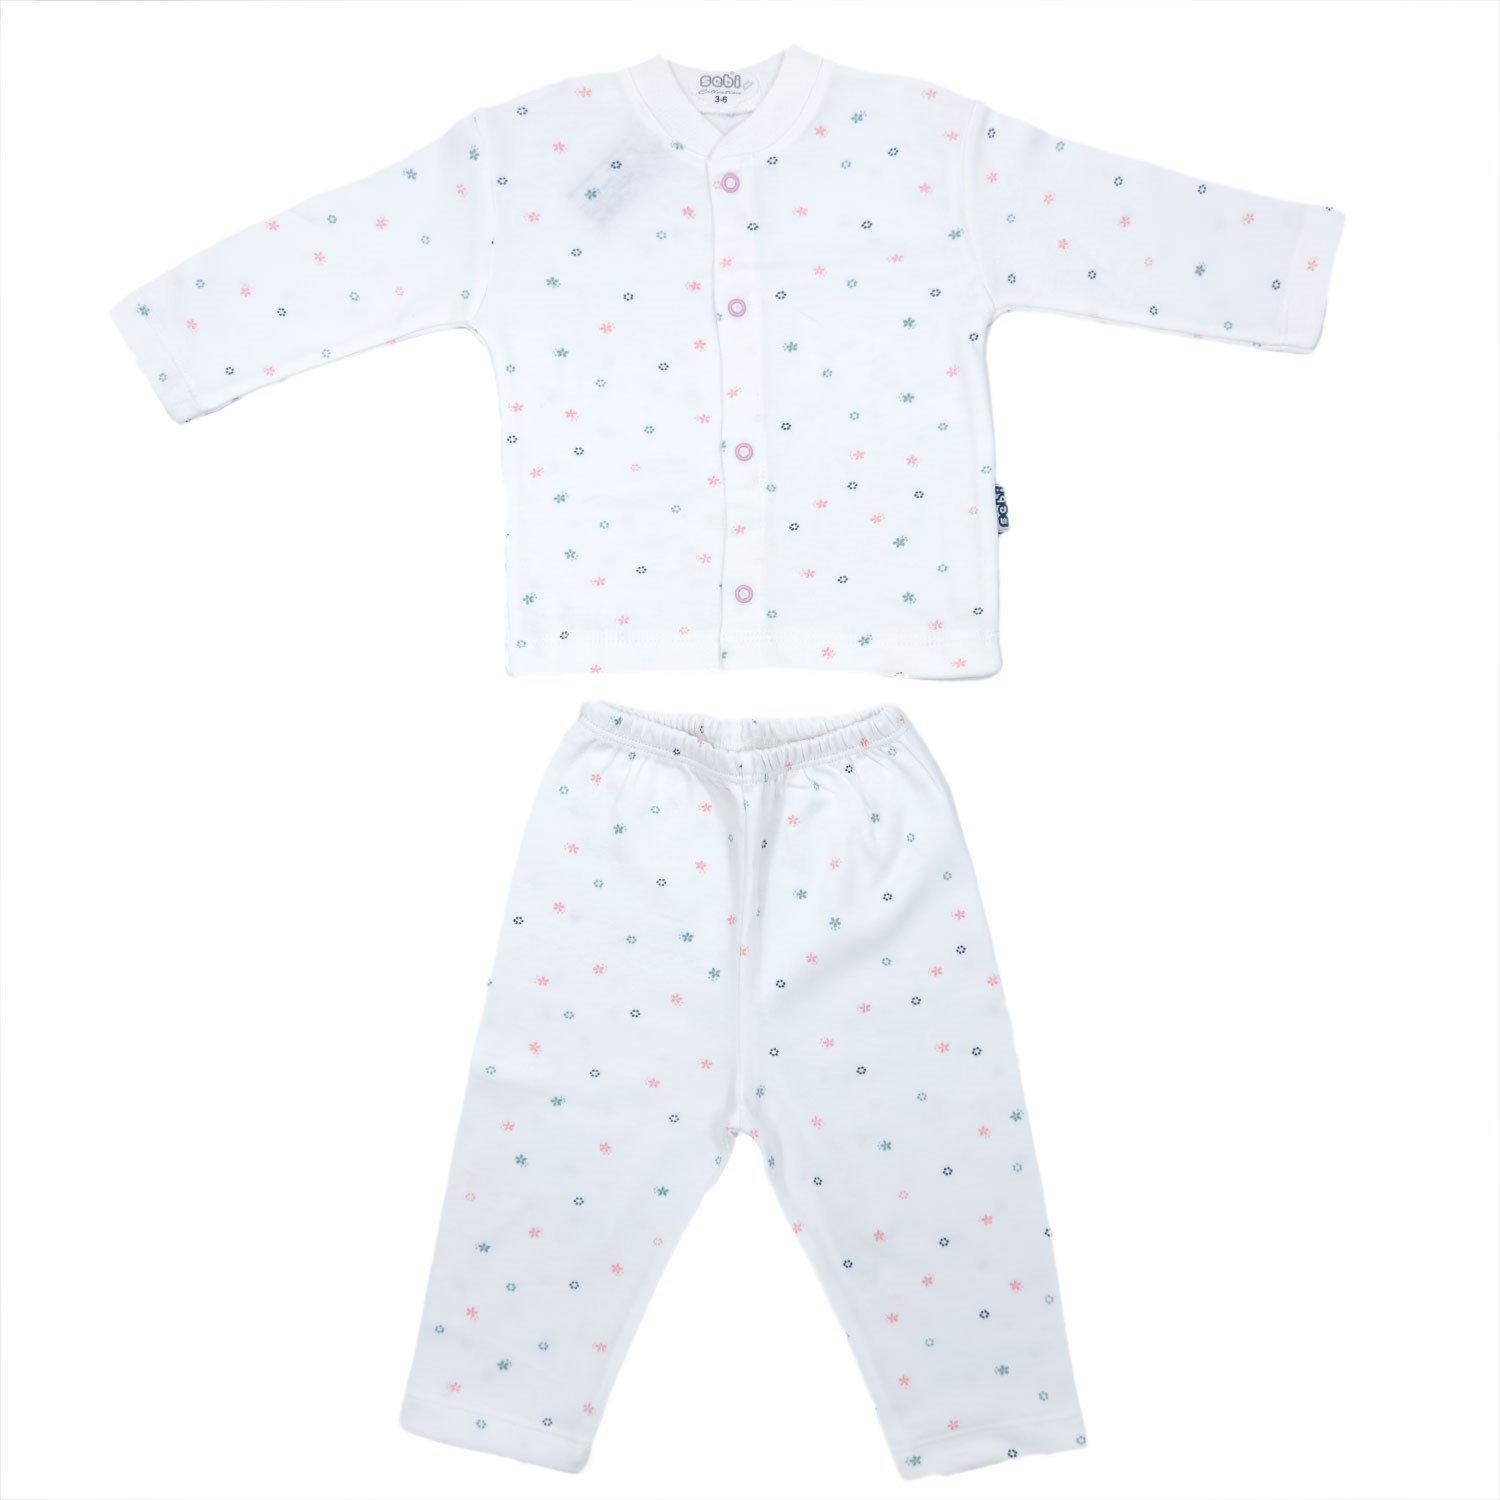 Sebi Bebe Ay Yıldız Baskılı Bebek Pijama Takımı 2331 Beyaz-Pembe